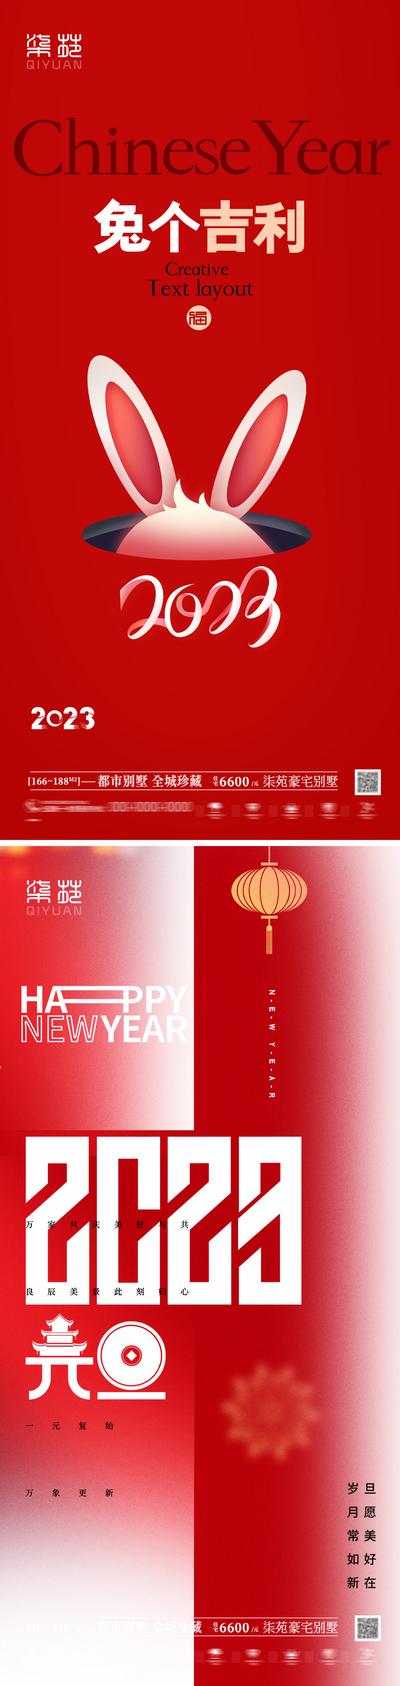 南门网 海报 地产 公历节日 元旦 兔年 新年